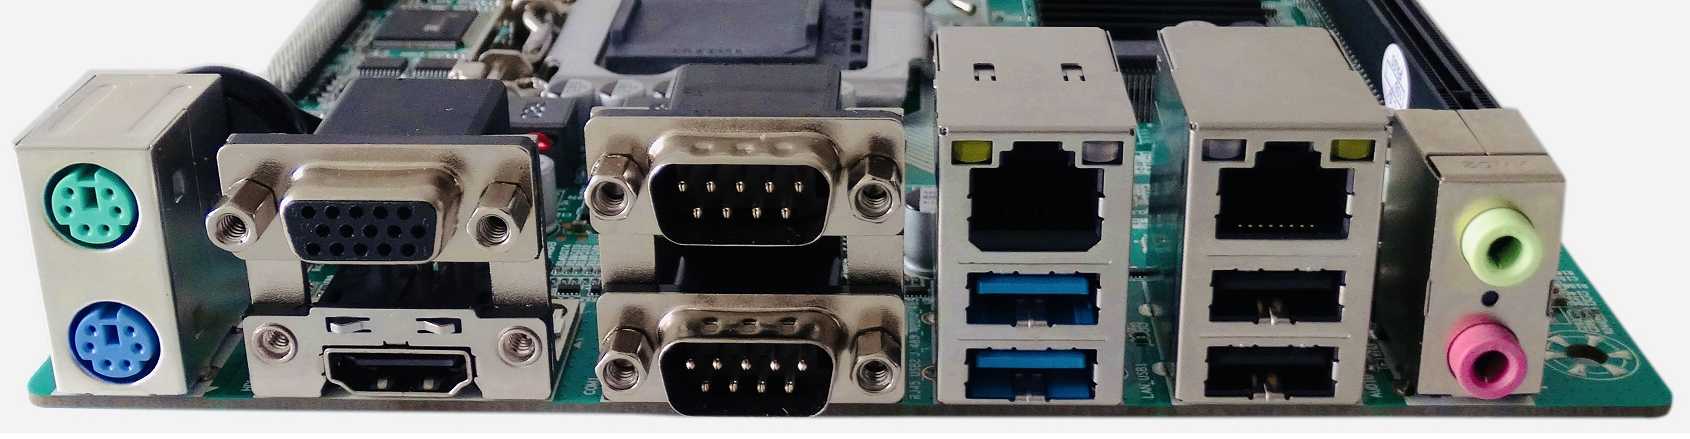 Mini ITX Motherboard Gigabit Intel H81 6 COM 8 USB PCIEx16 Slot